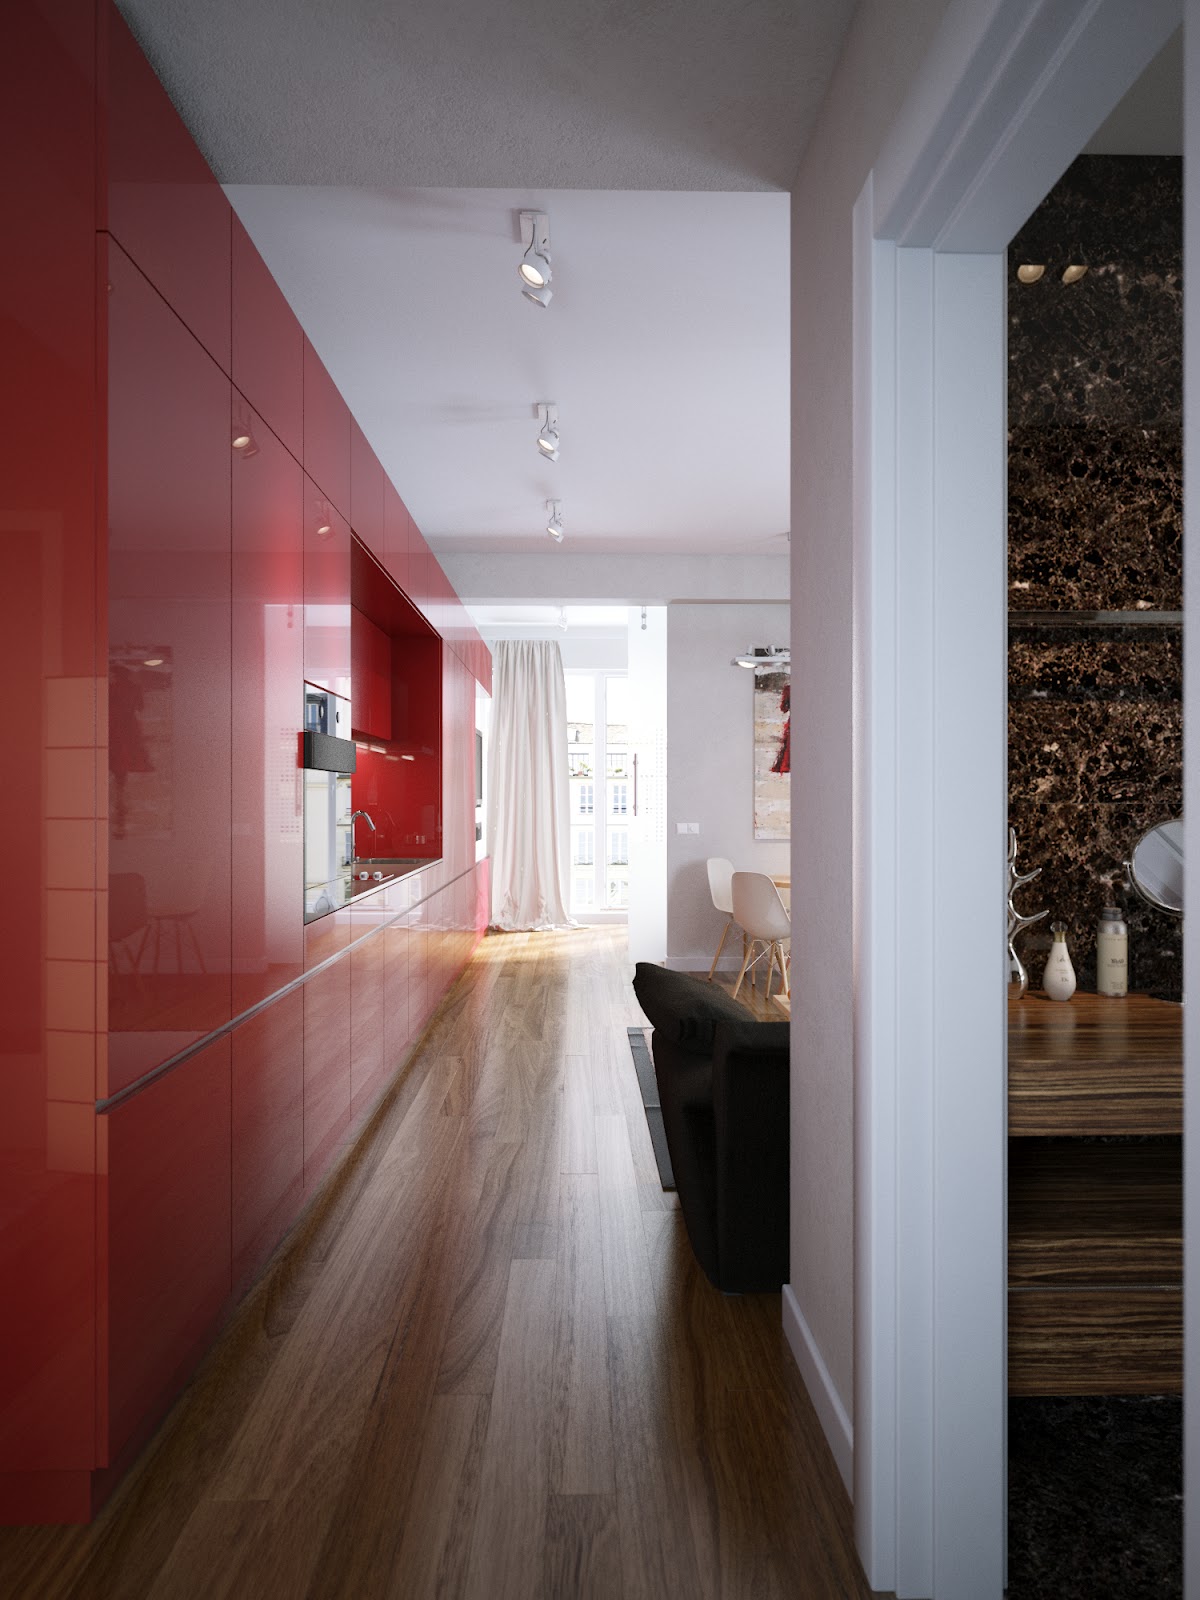 Red Slab Front Kitchen Cabinets Interior Design Ideas